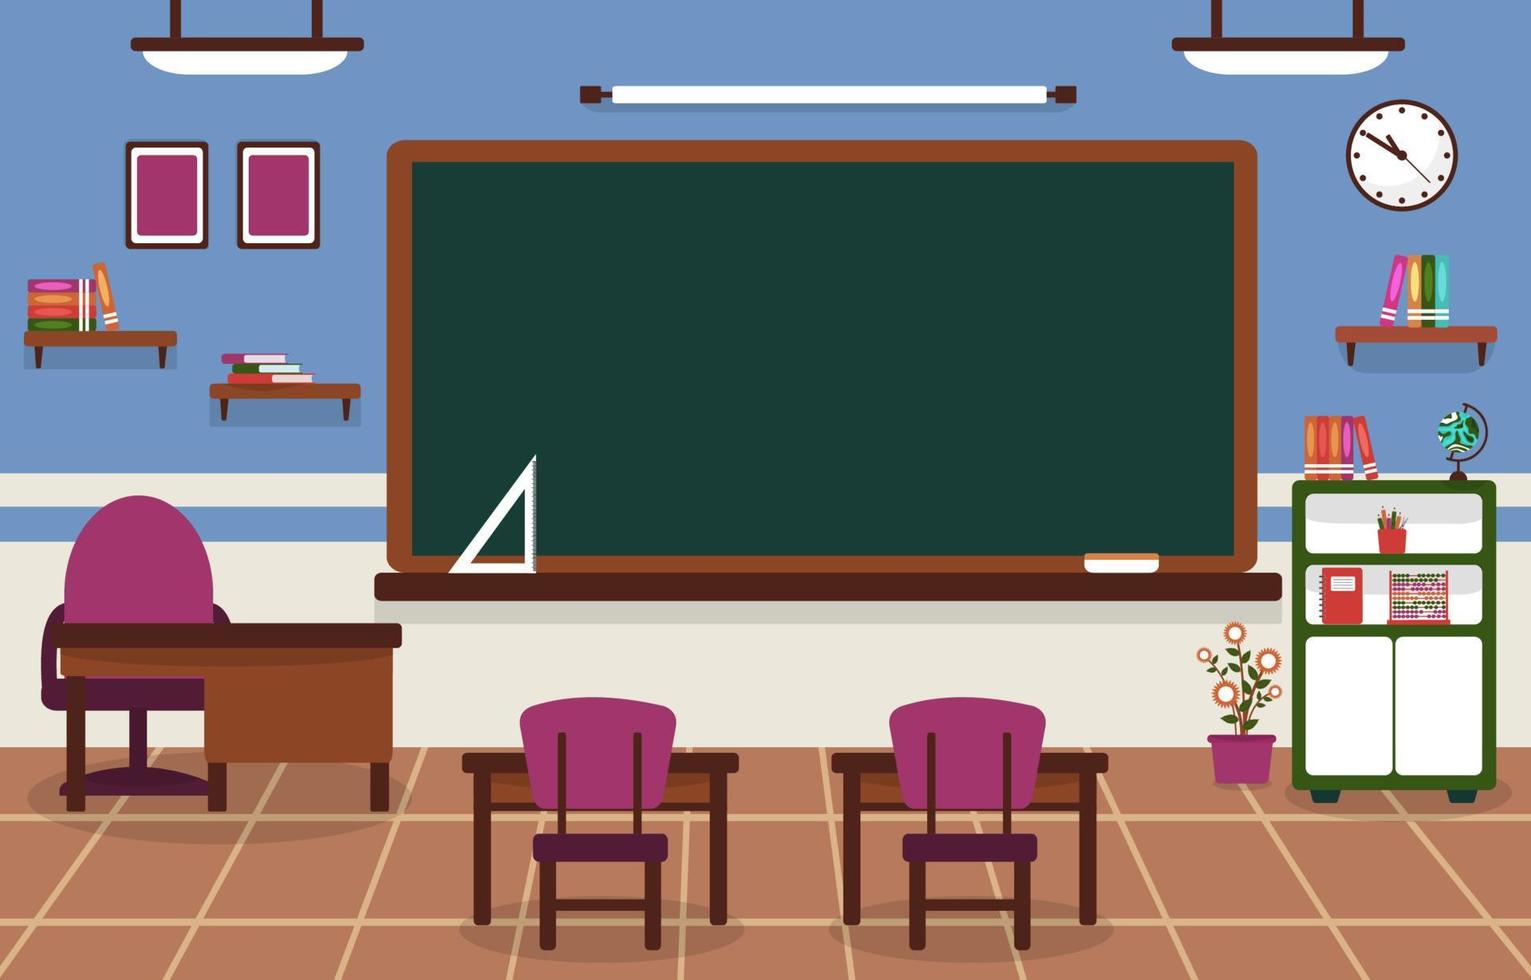 classe école personne classe tableau noir table chaise éducation illustration vecteur